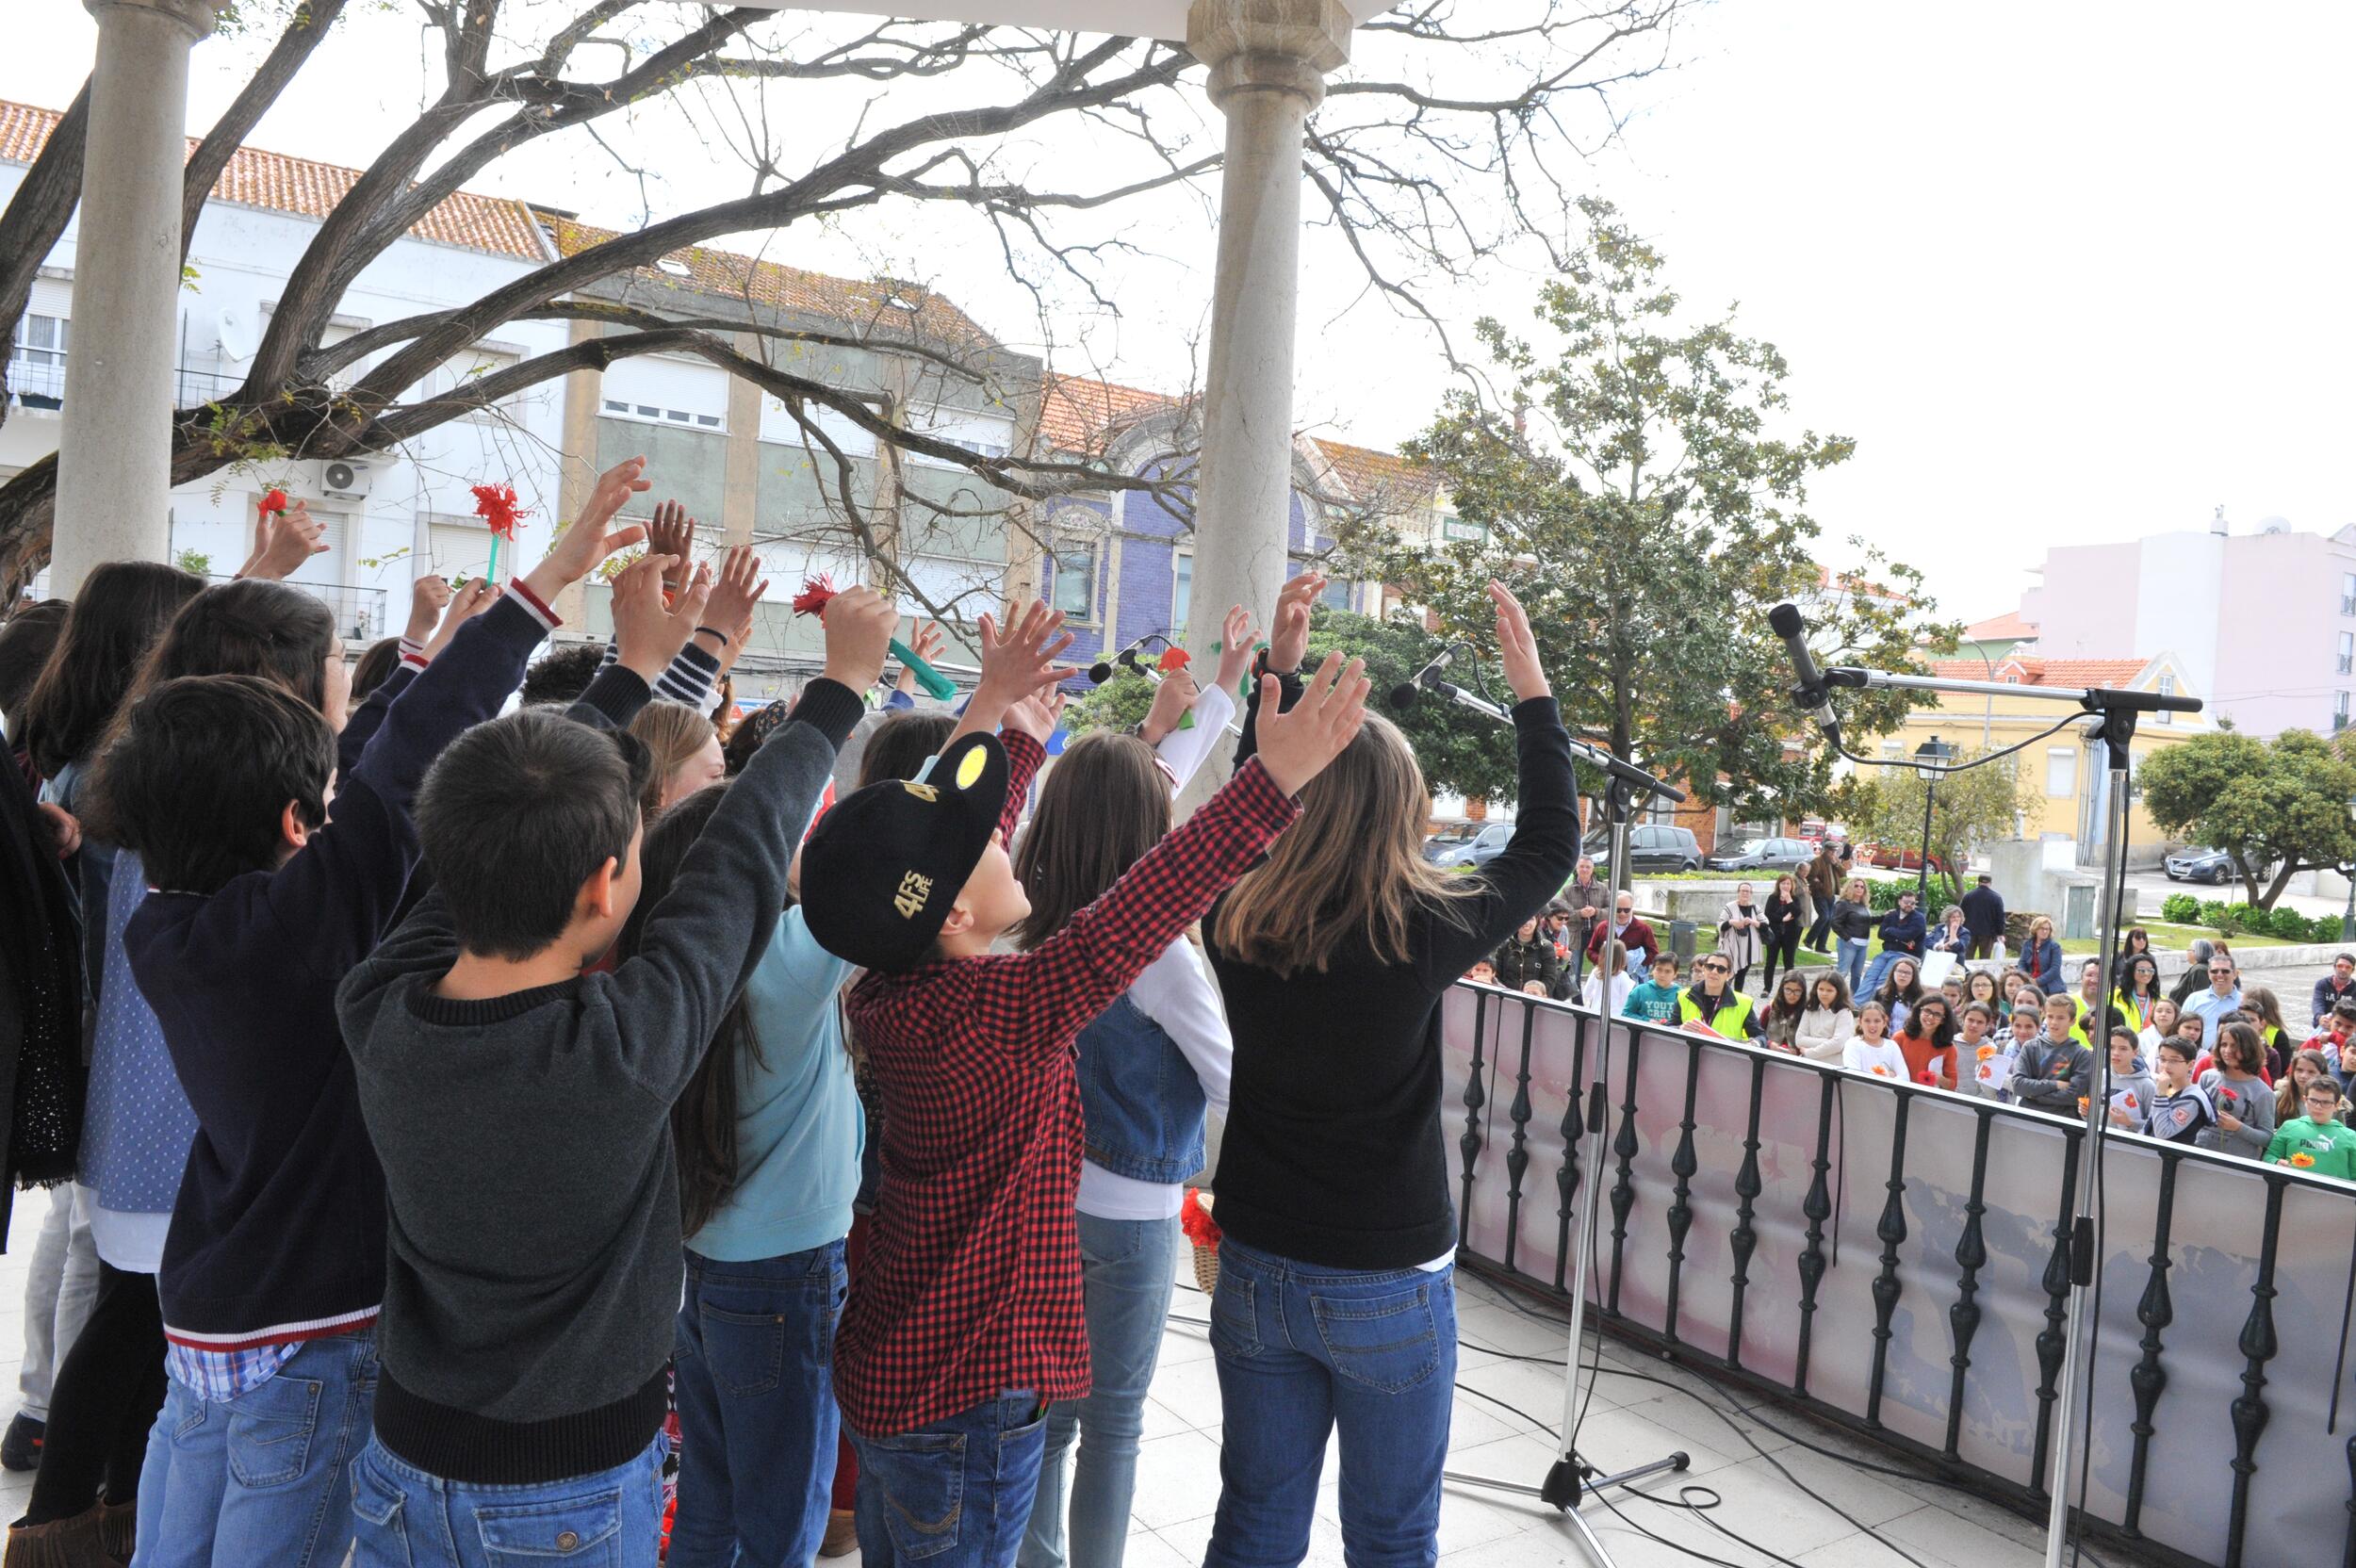 Jovens de Alcochete comemoram valores de Abril em “Na Voz dos Jovens”